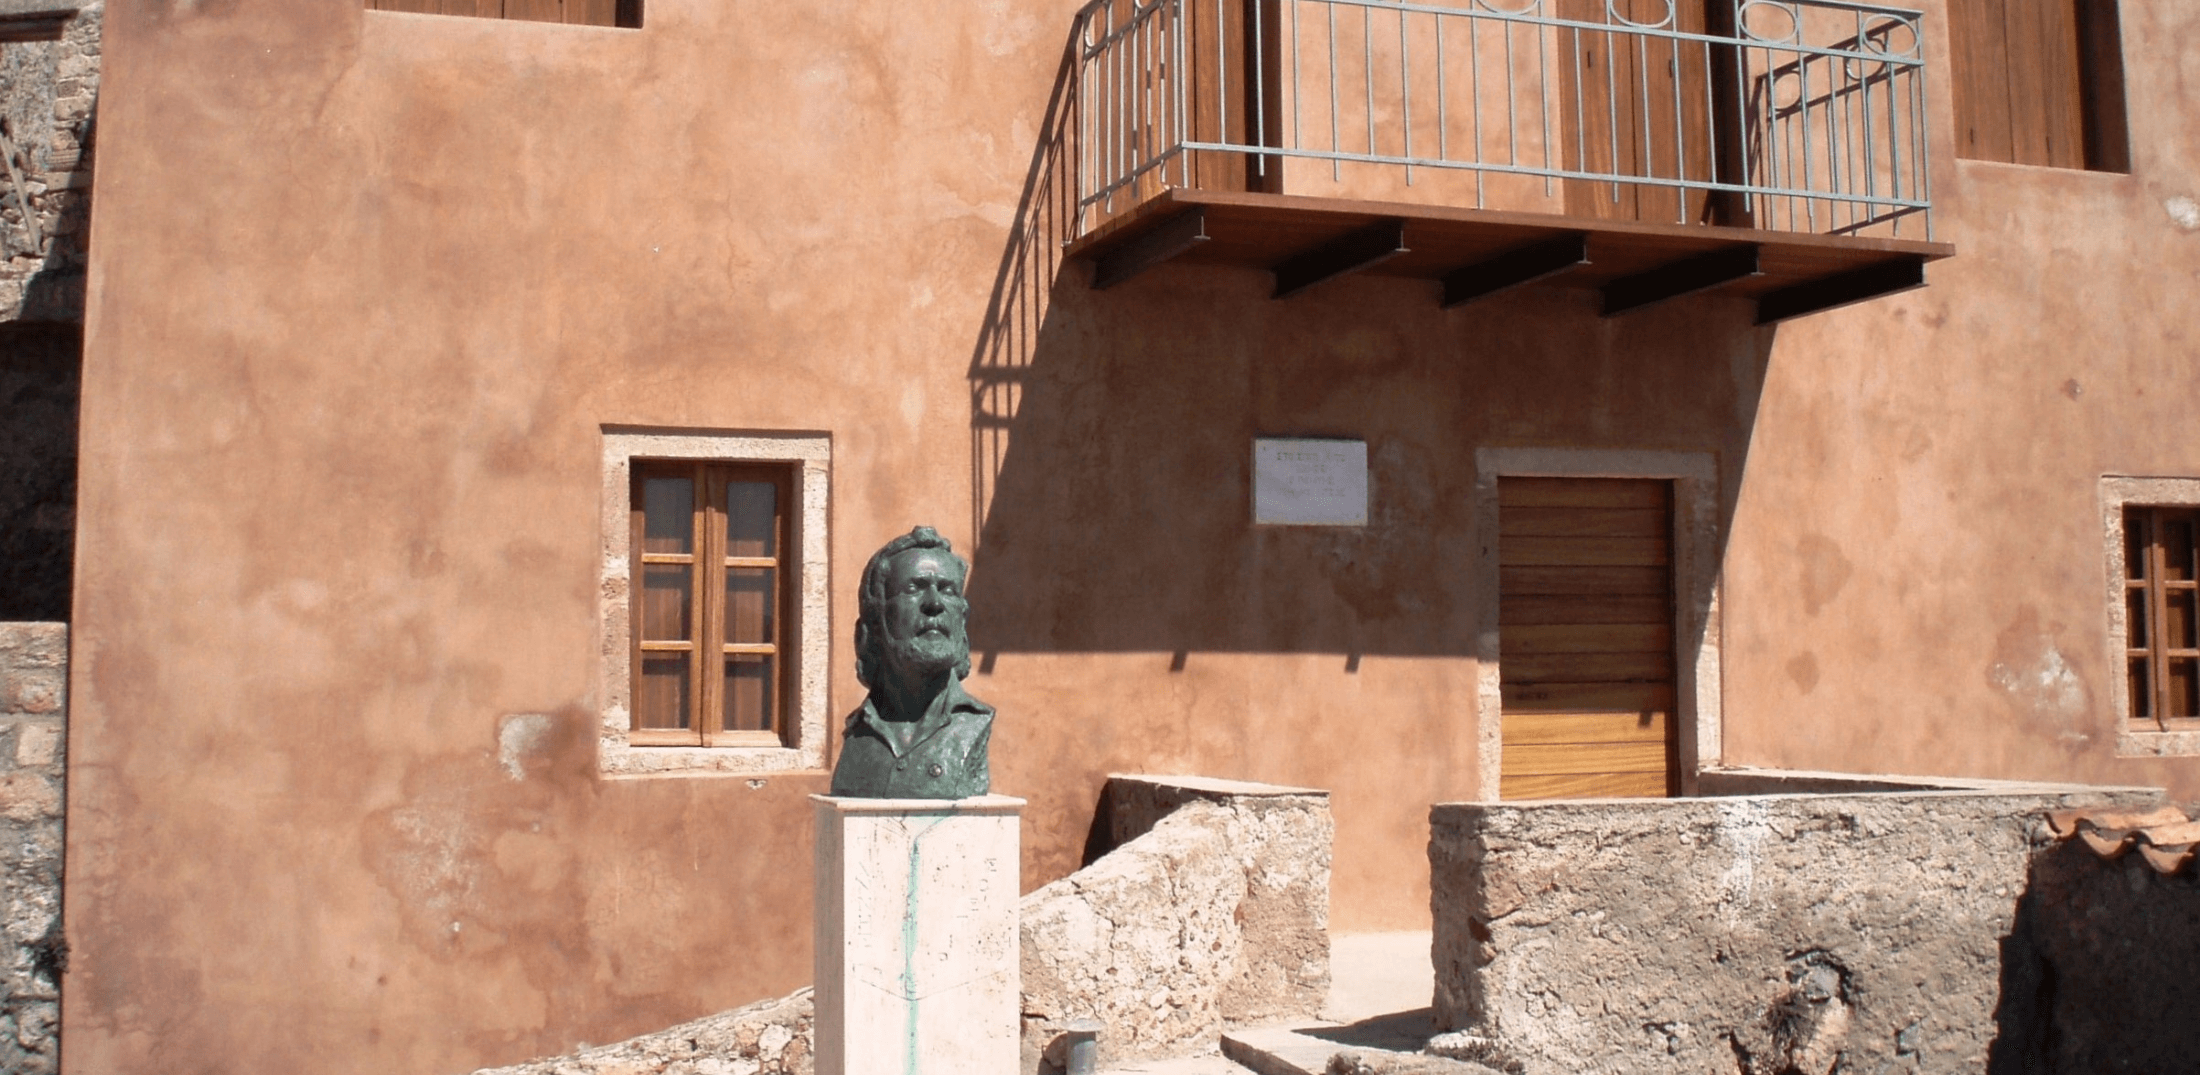 Μουσείο η οικία του Γιάννη Ρίτσου στην Καστροπολιτεία της Μονεμβασίας